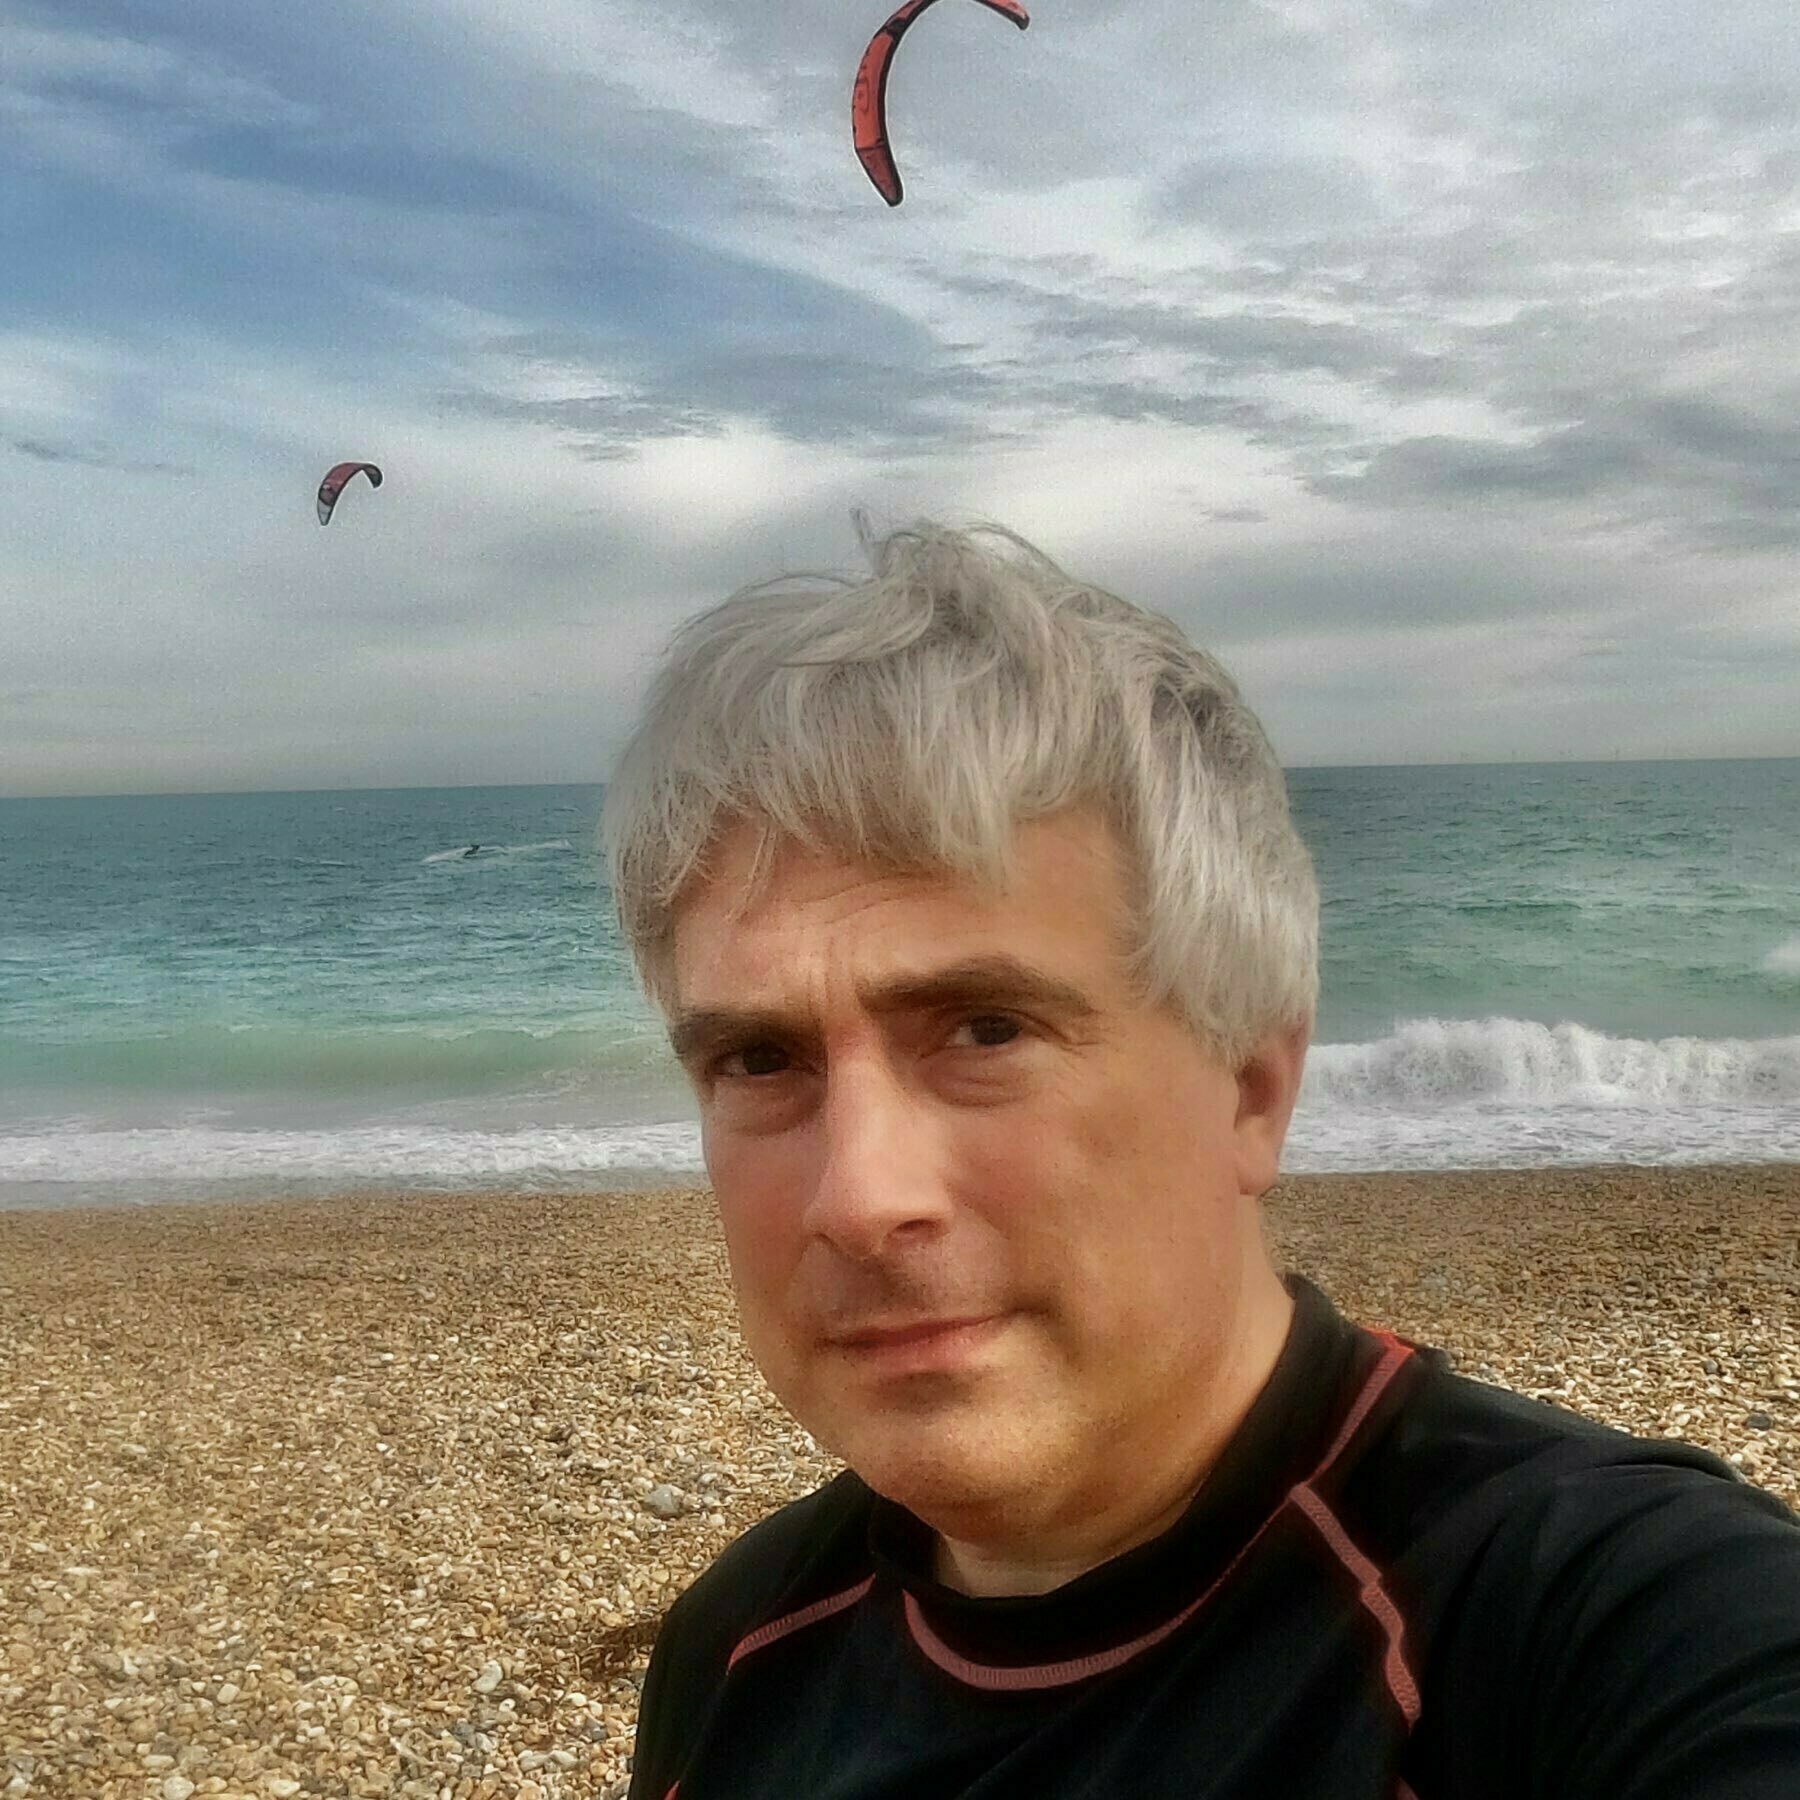 Adam Tinworth on Shoreham Beach